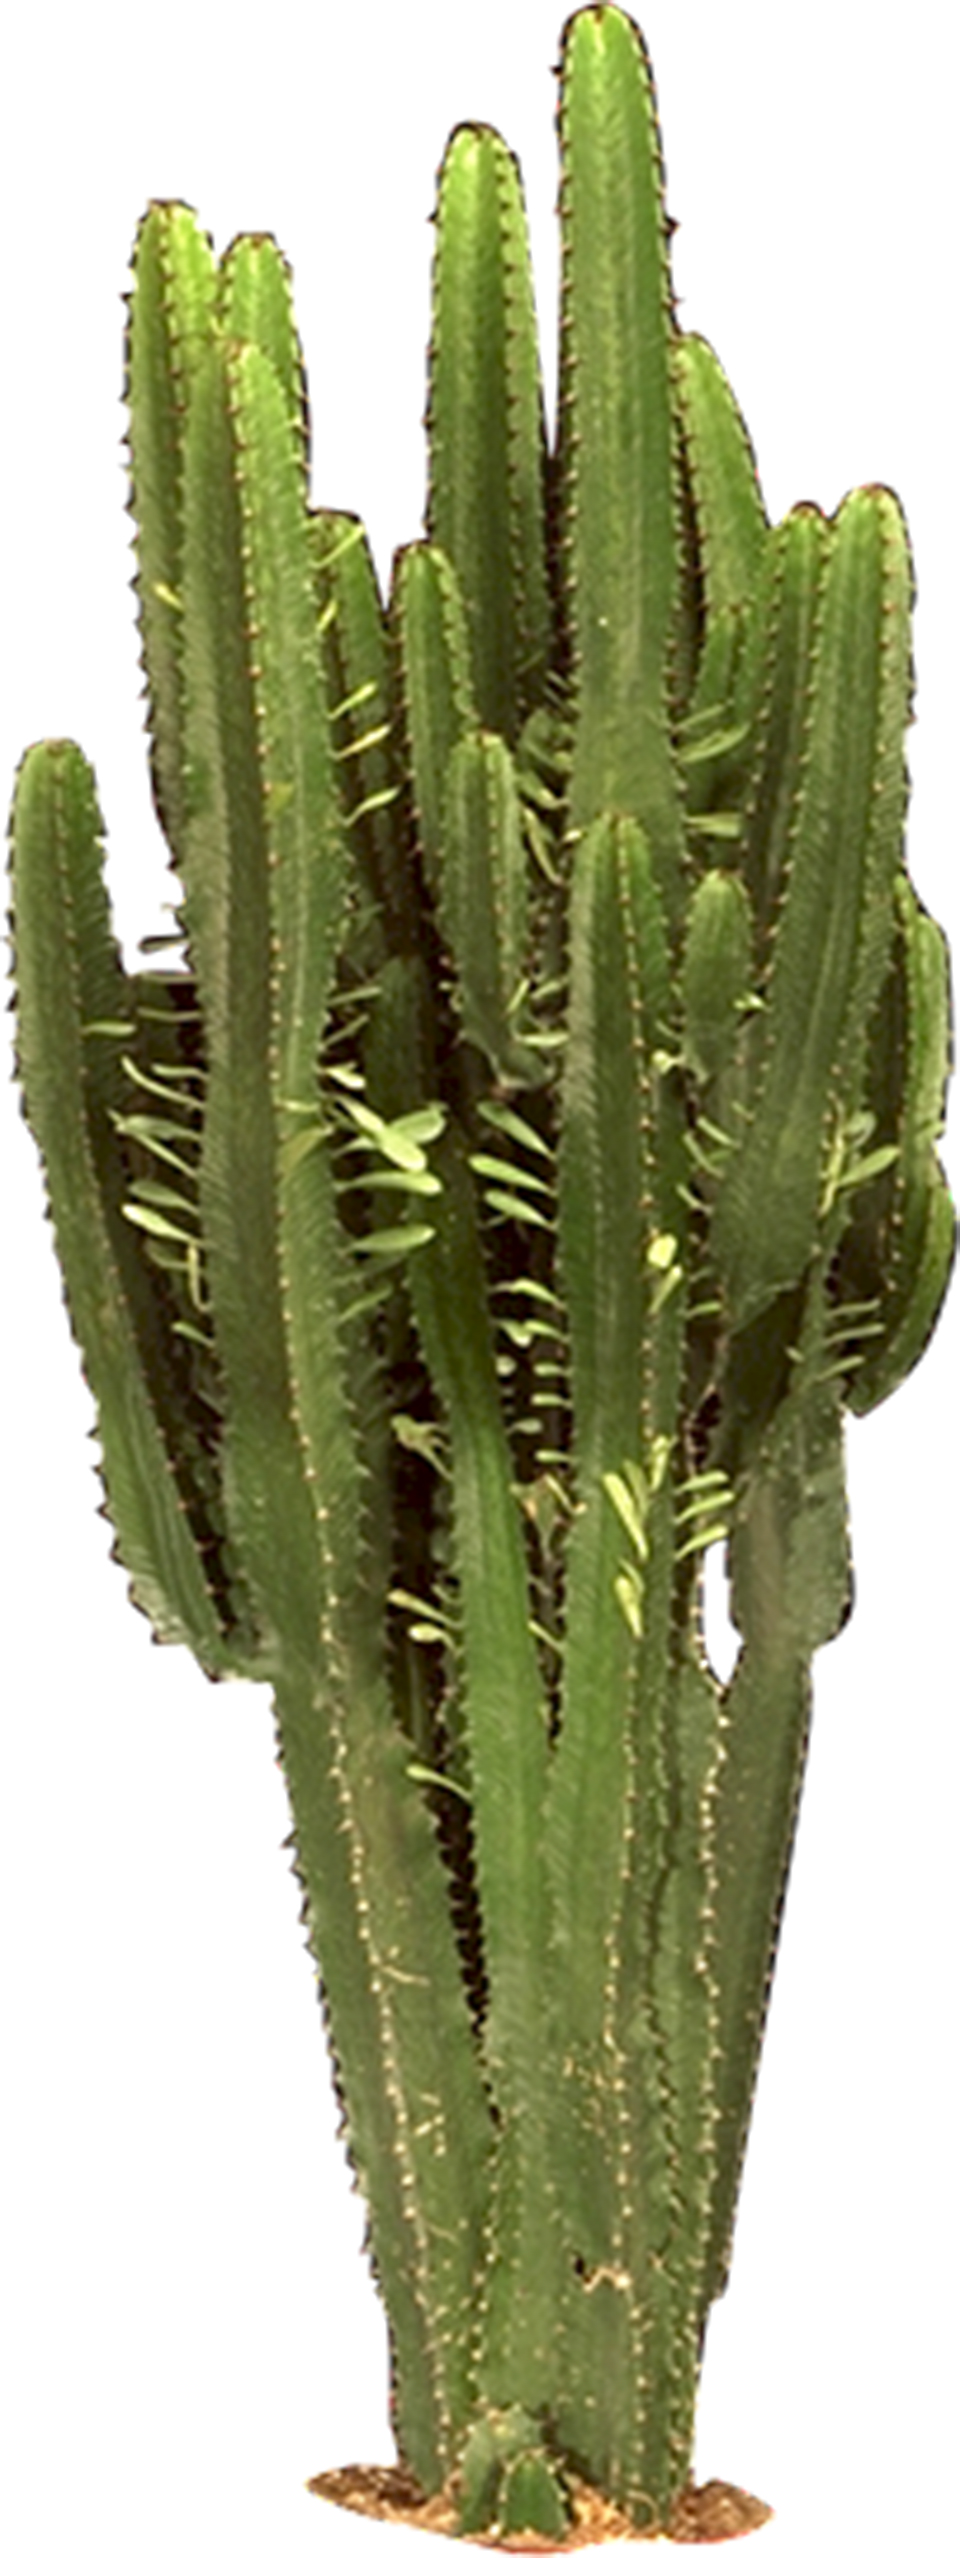 PNG Kaktus - 51757